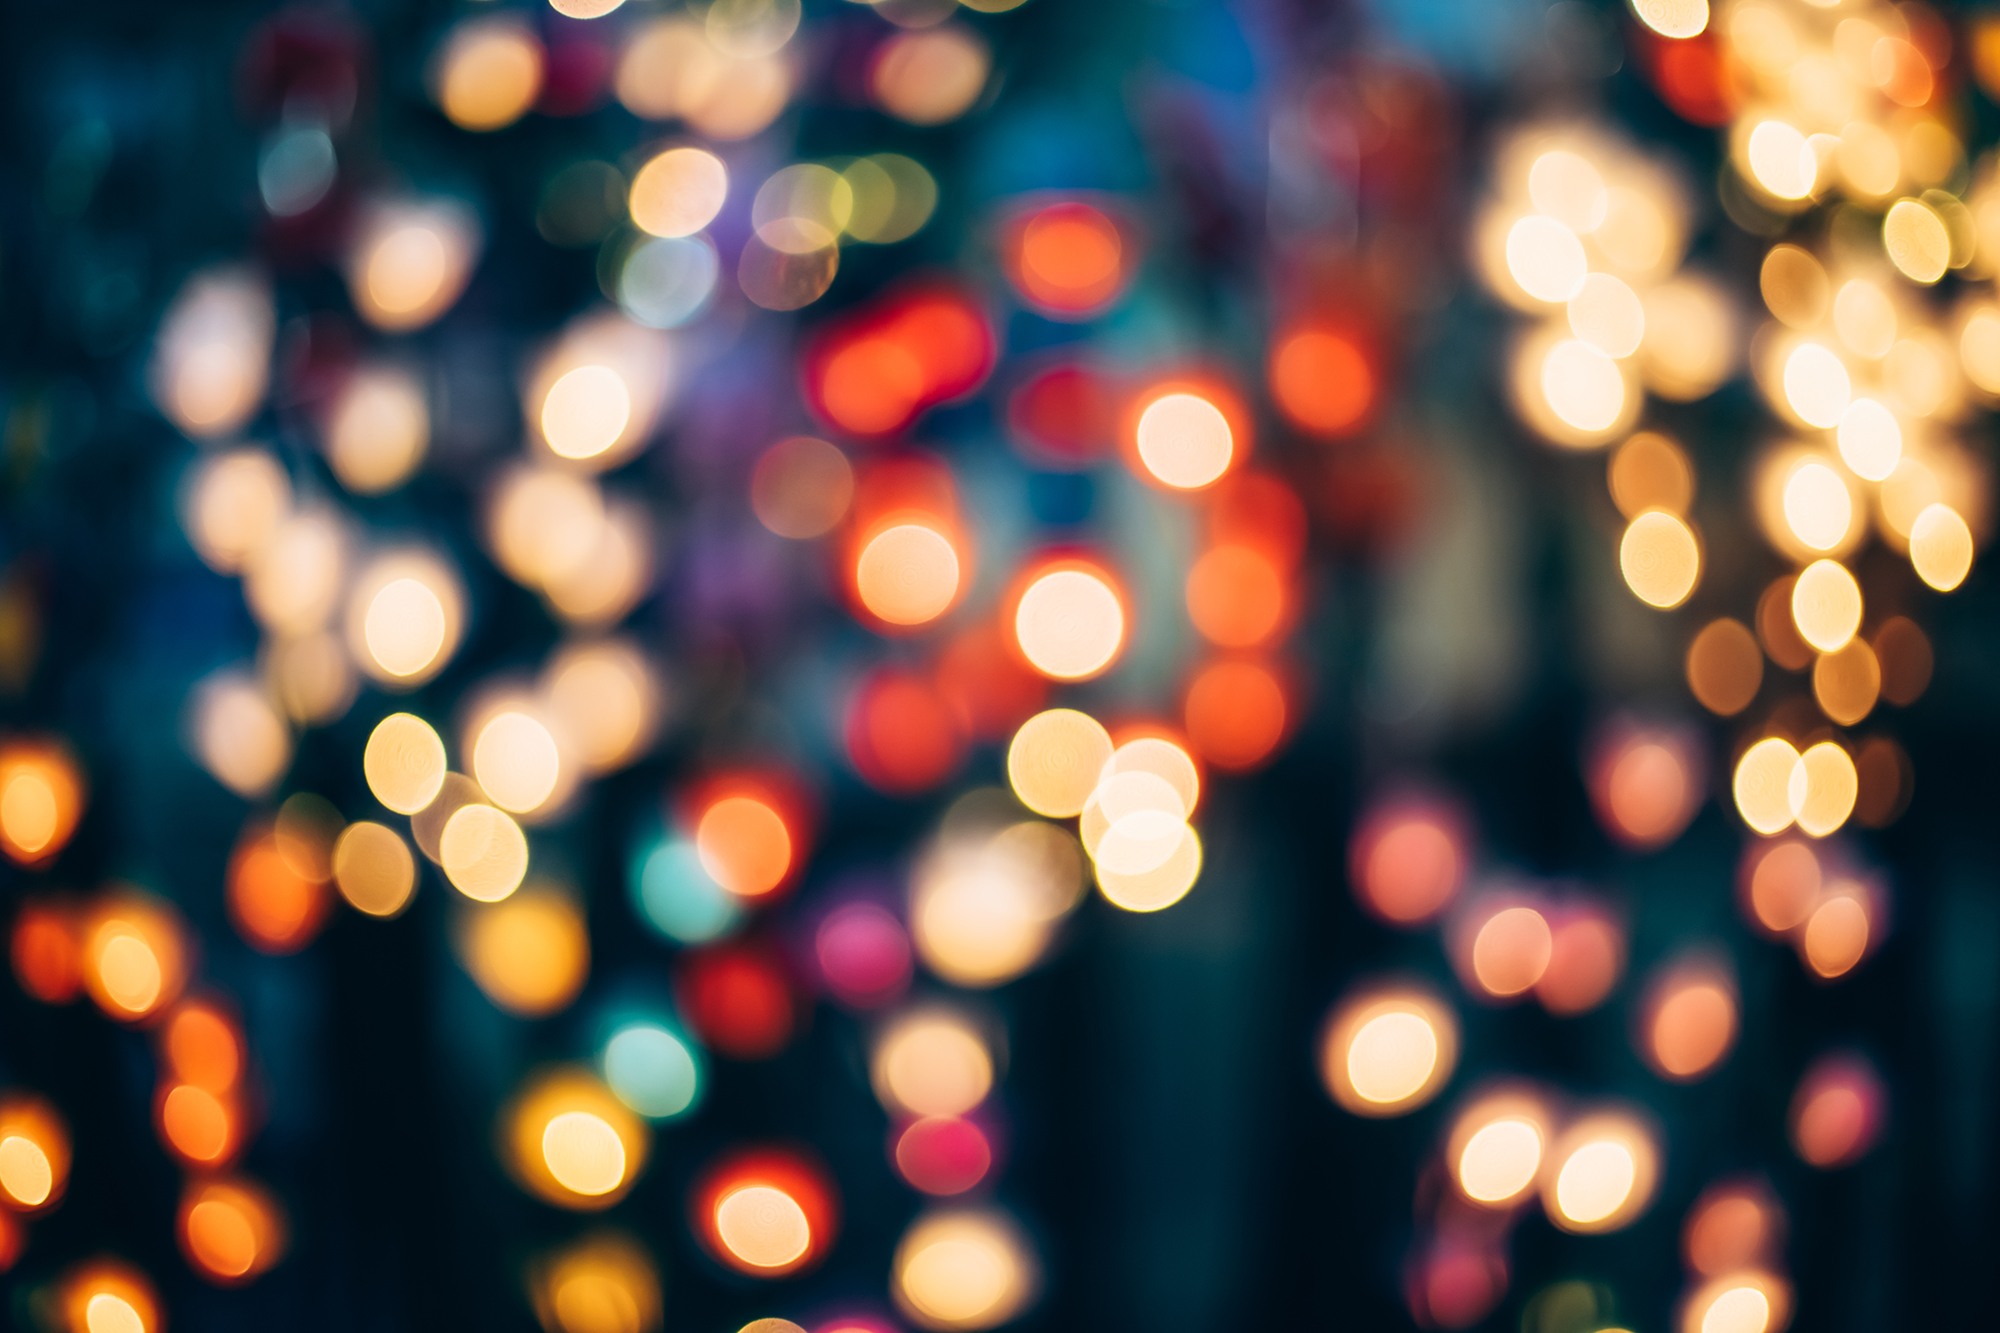 Defocused Image Of Illuminated Christmas Lights